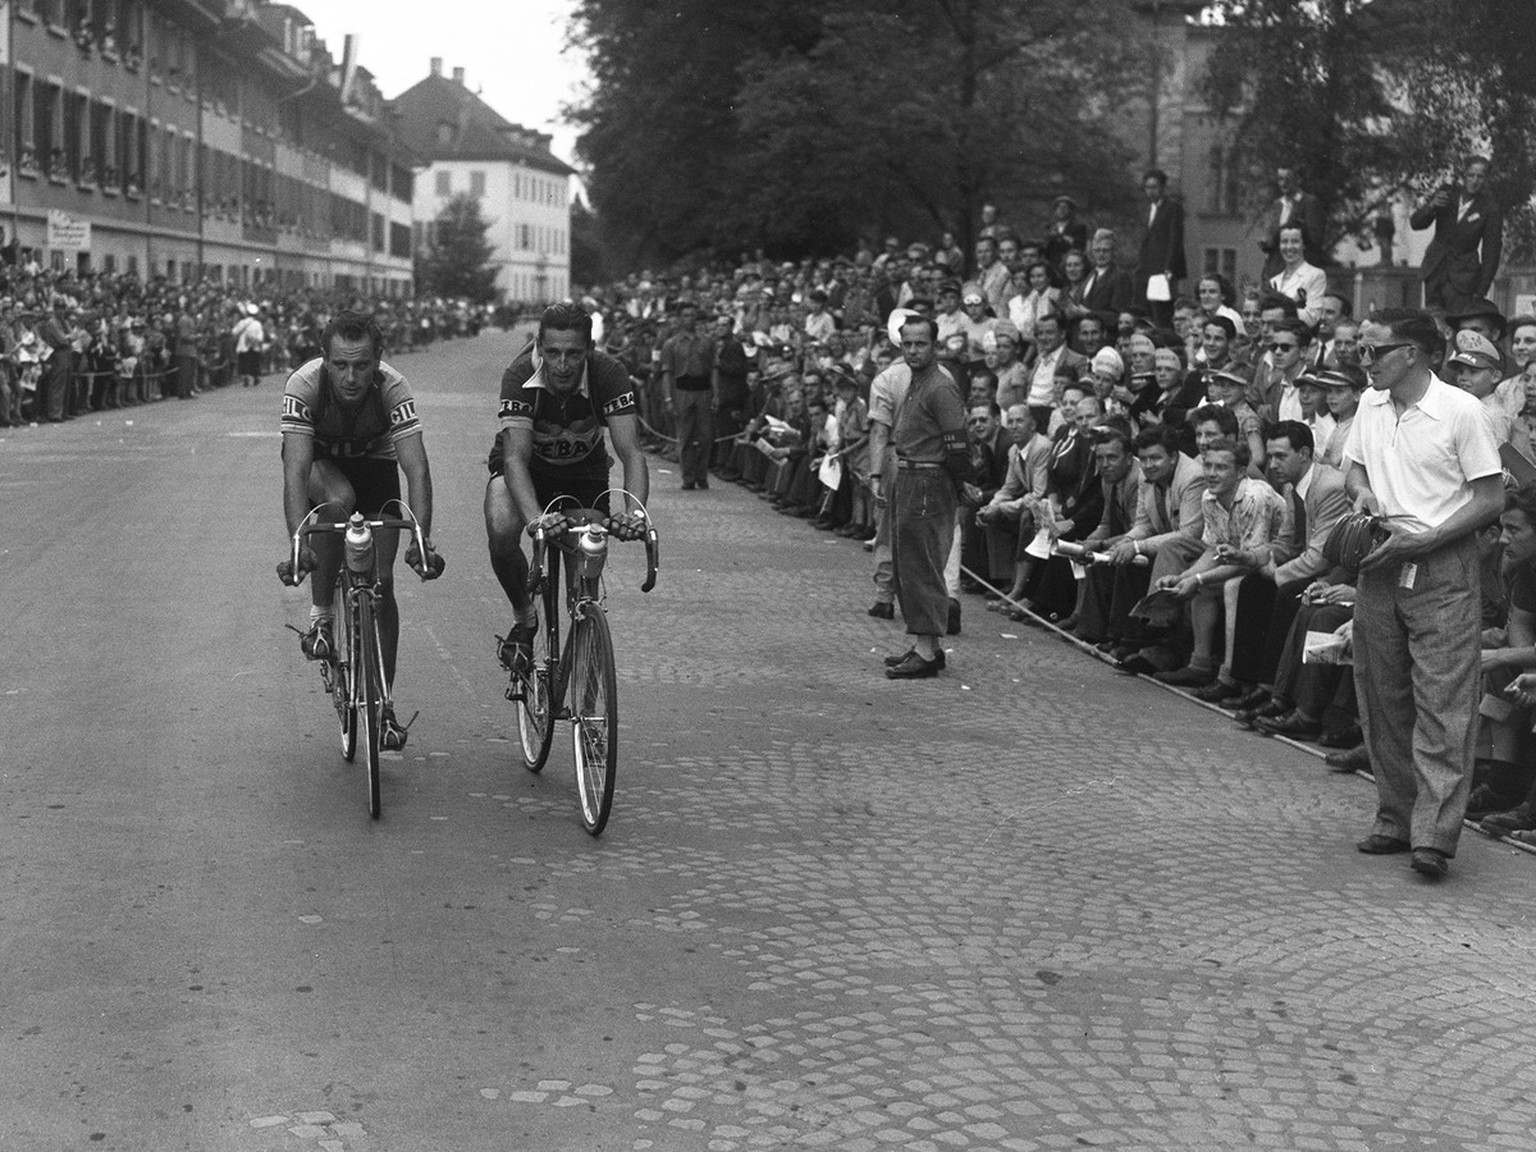 Koblet und Kübler an der Tour de Suisse von 1951. Kübler gewann die Tour vor Koblet.
https://permalink.nationalmuseum.ch/100643897